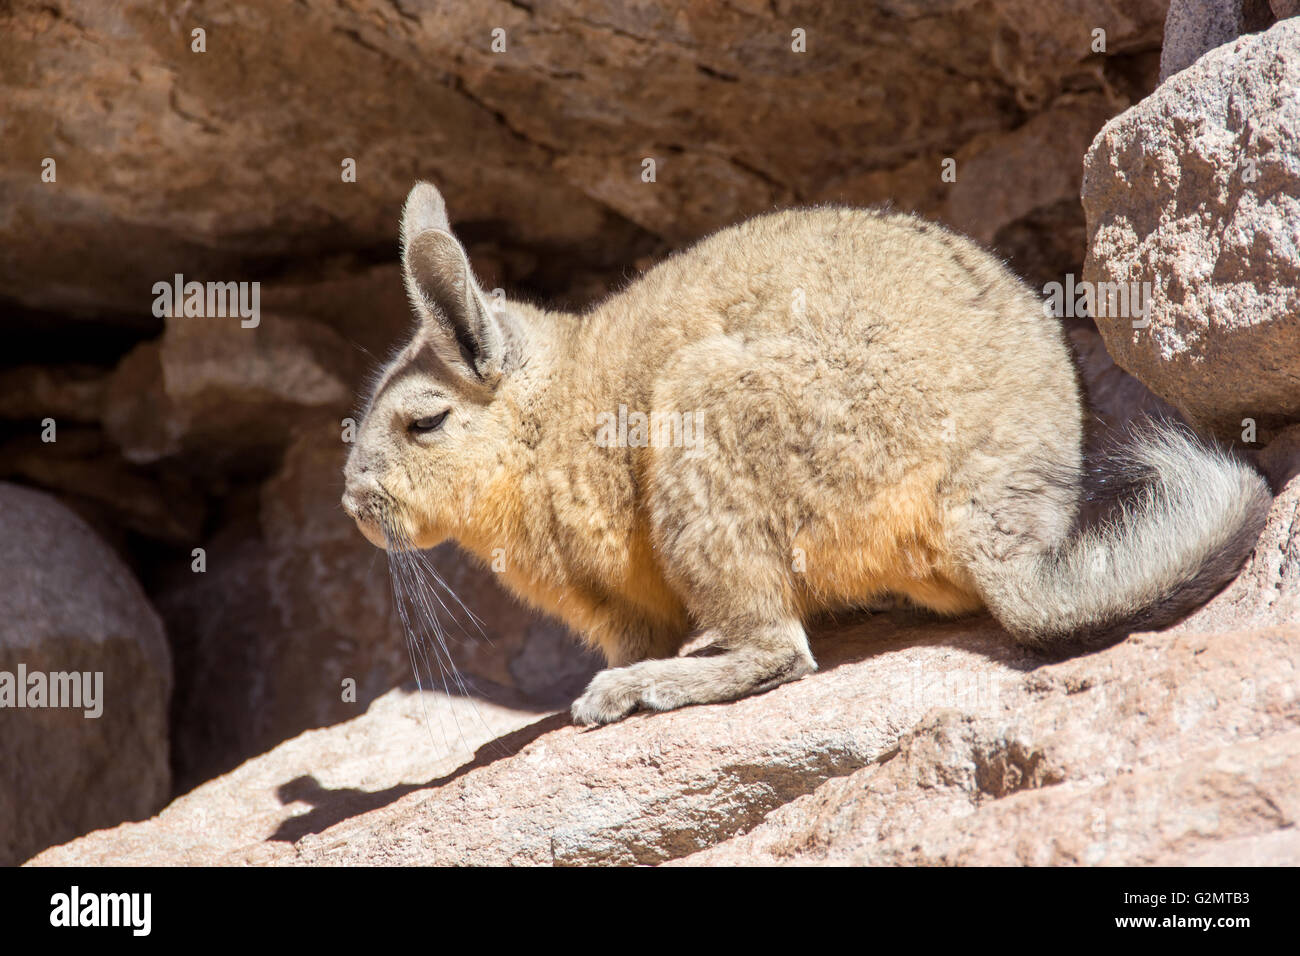 La viscache des montagnes du sud, la viscache (lagidium viscacia) dans les roches, Eduardo Avaroa, réserve nationale de faune andine bolivie Banque D'Images